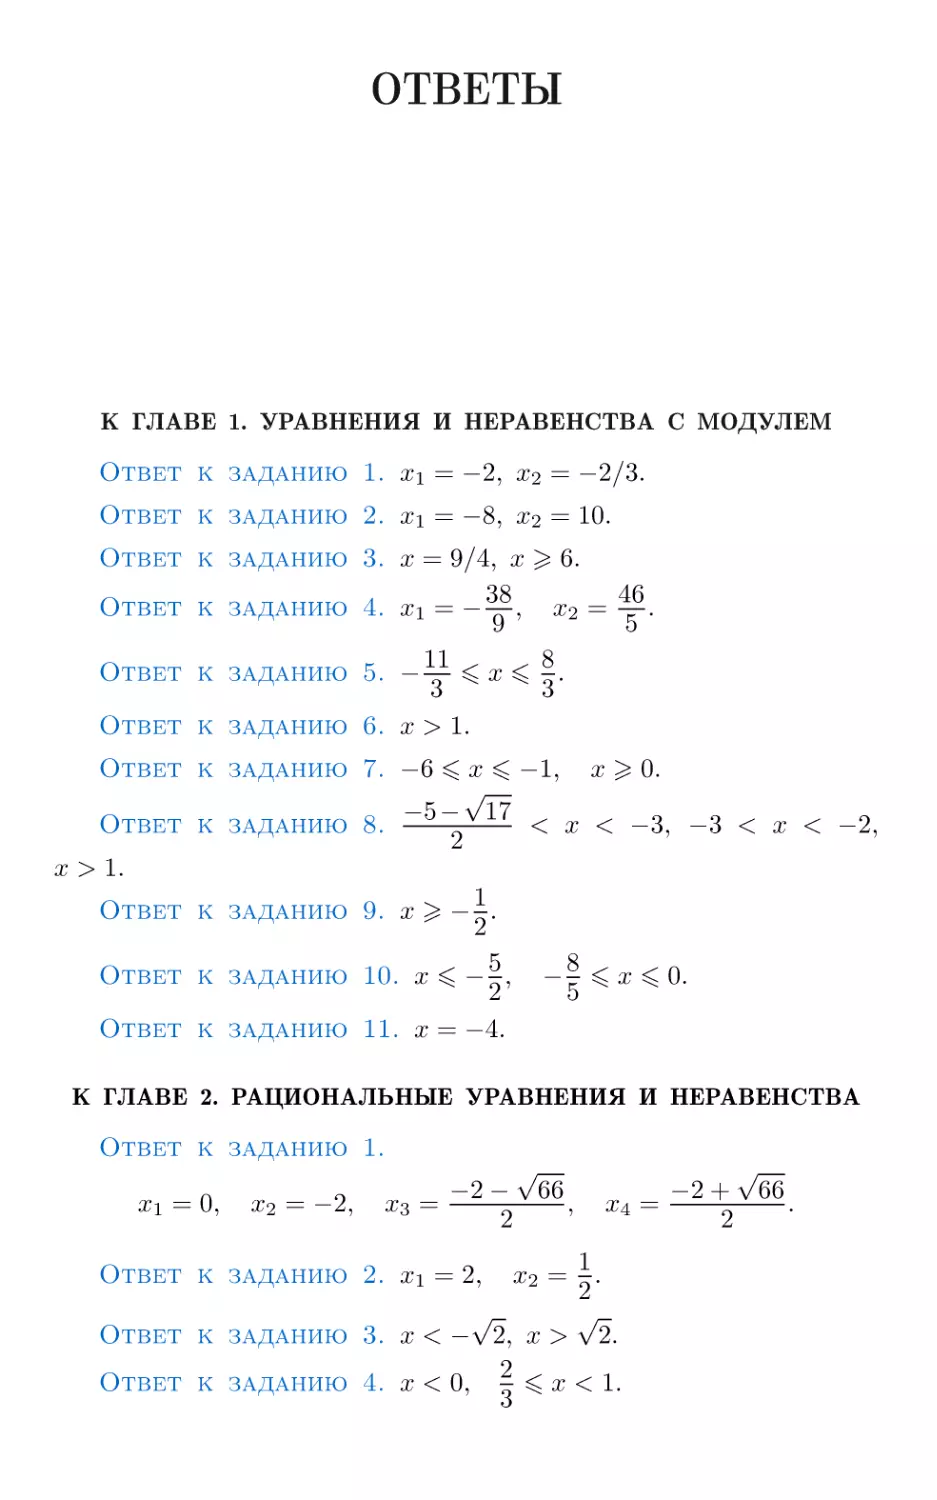 Ответы
К главе 1. Уравнения и неравенства с модулем
К главе 2. Рациональные уравнения и неравенства